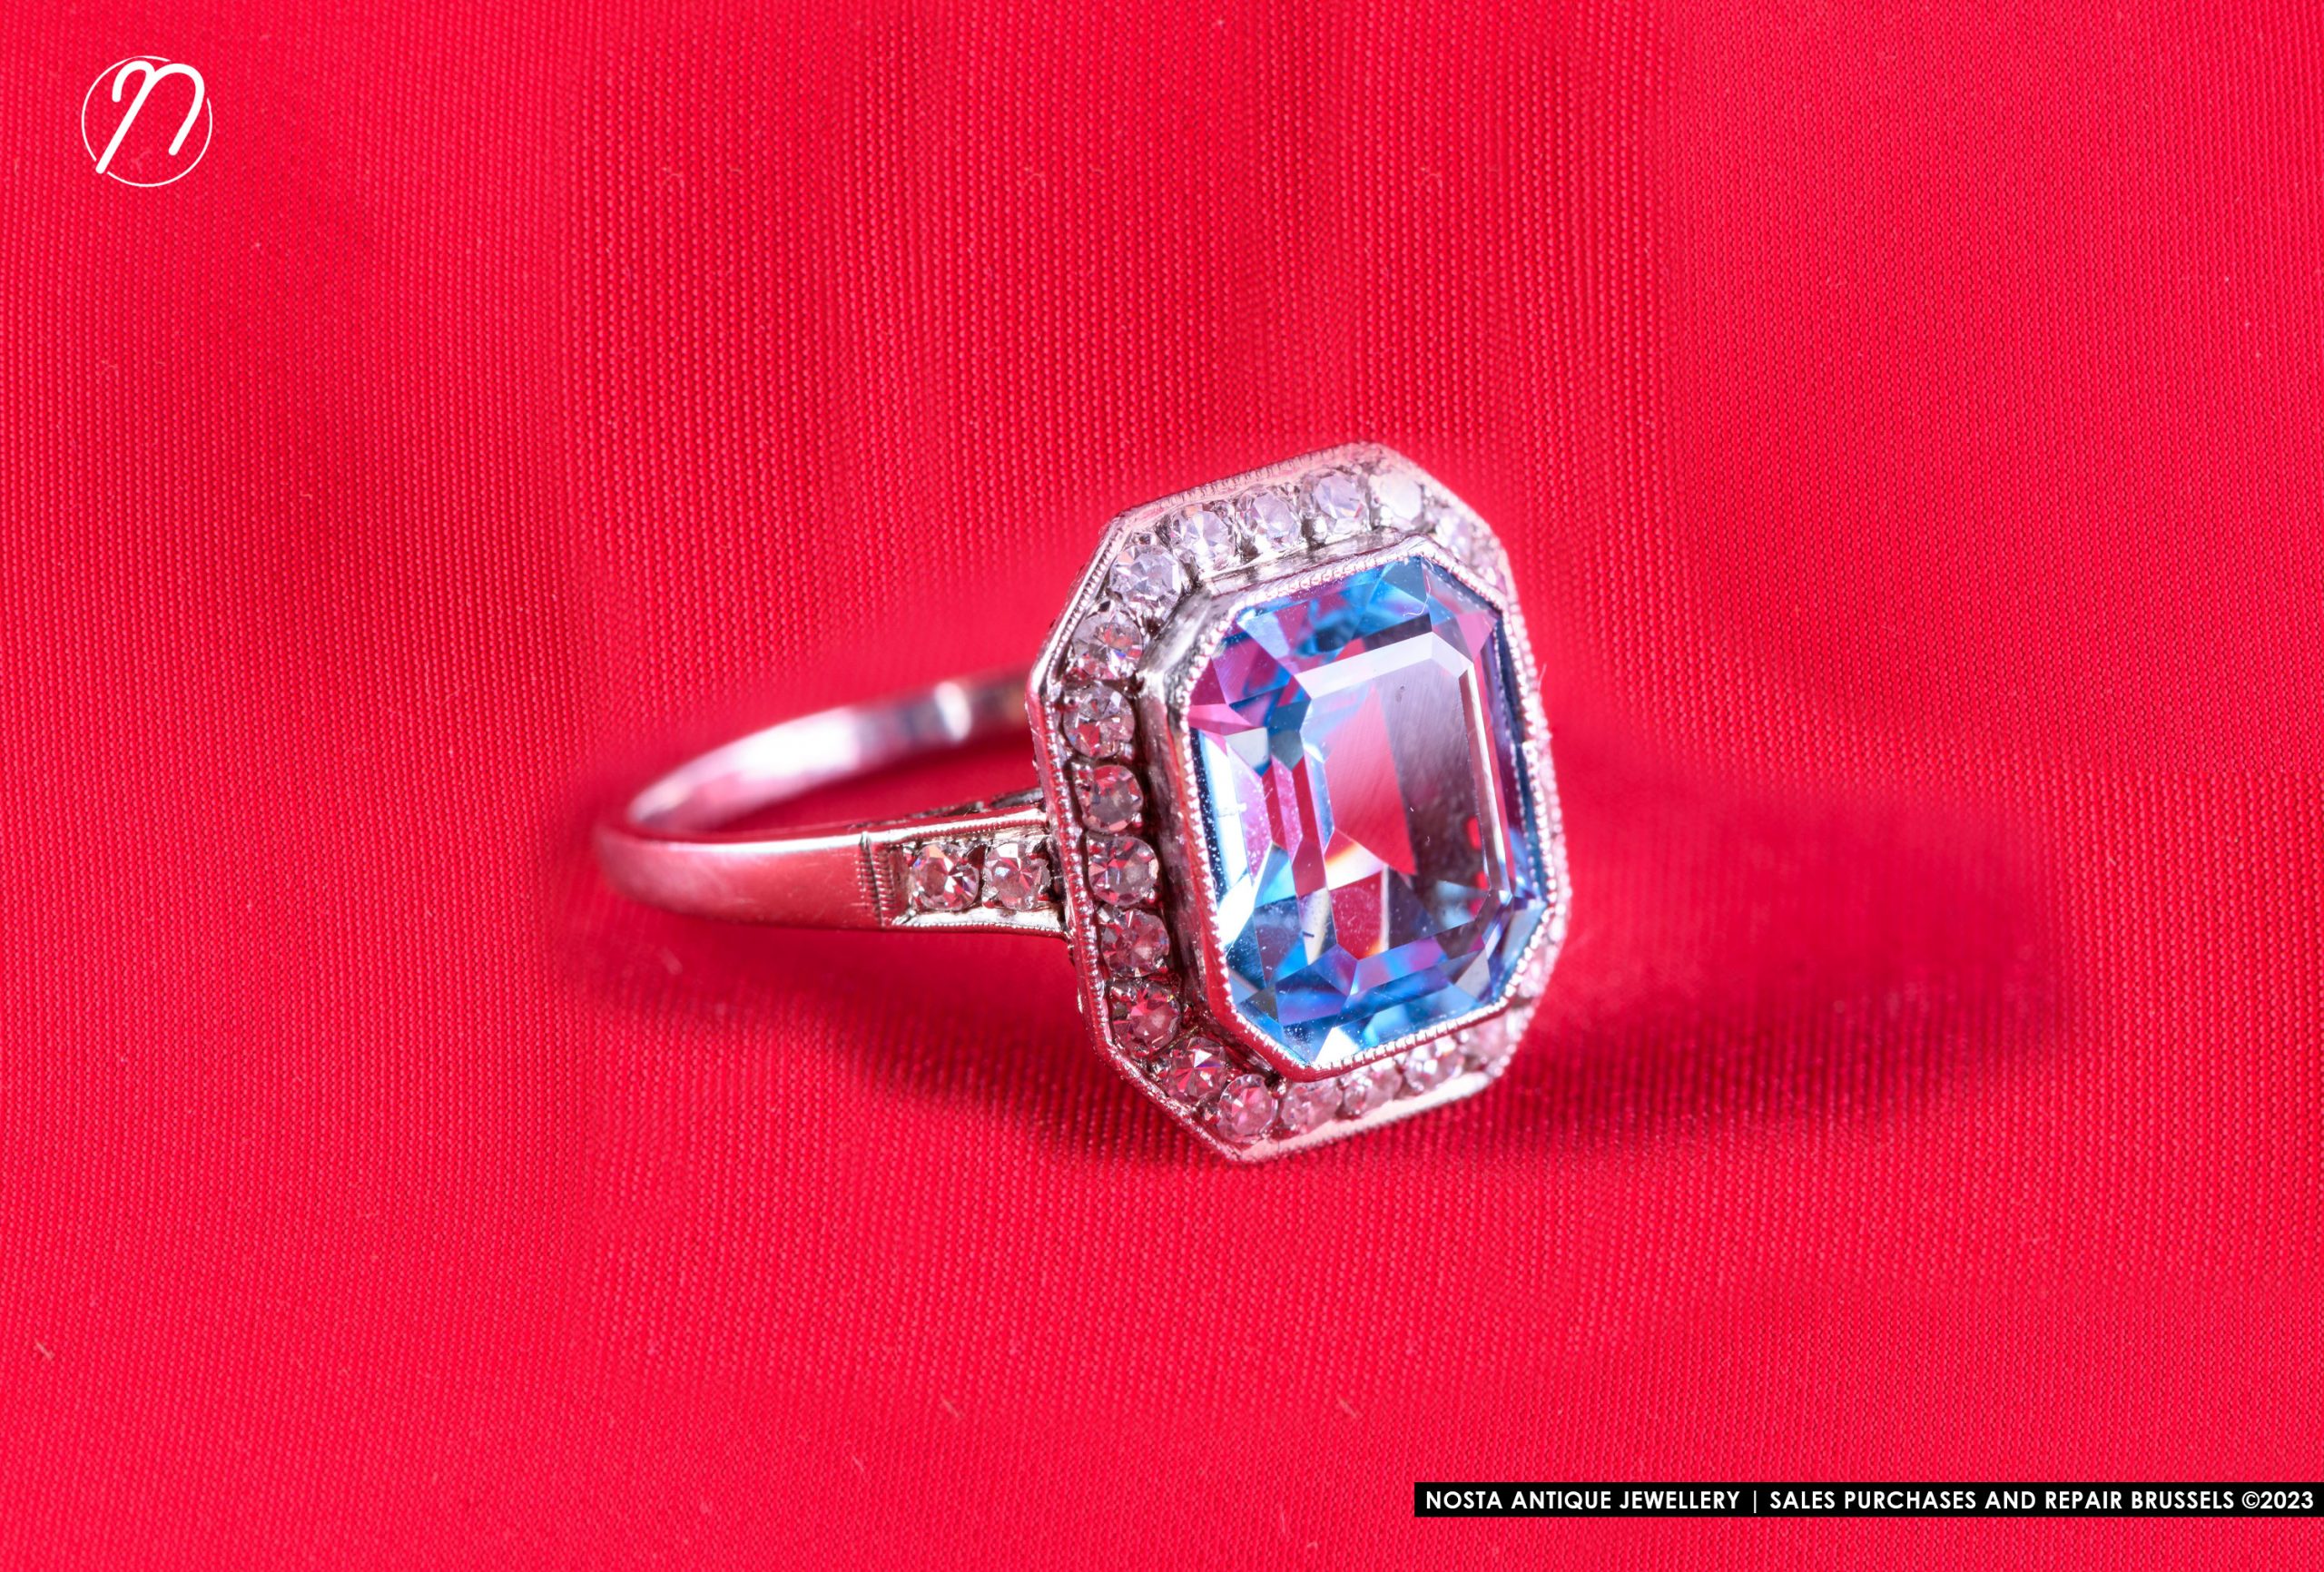 Platinum Topaz Ring with Diamonds - Bague Art Déco en platine avec topaze et diamants, 1925